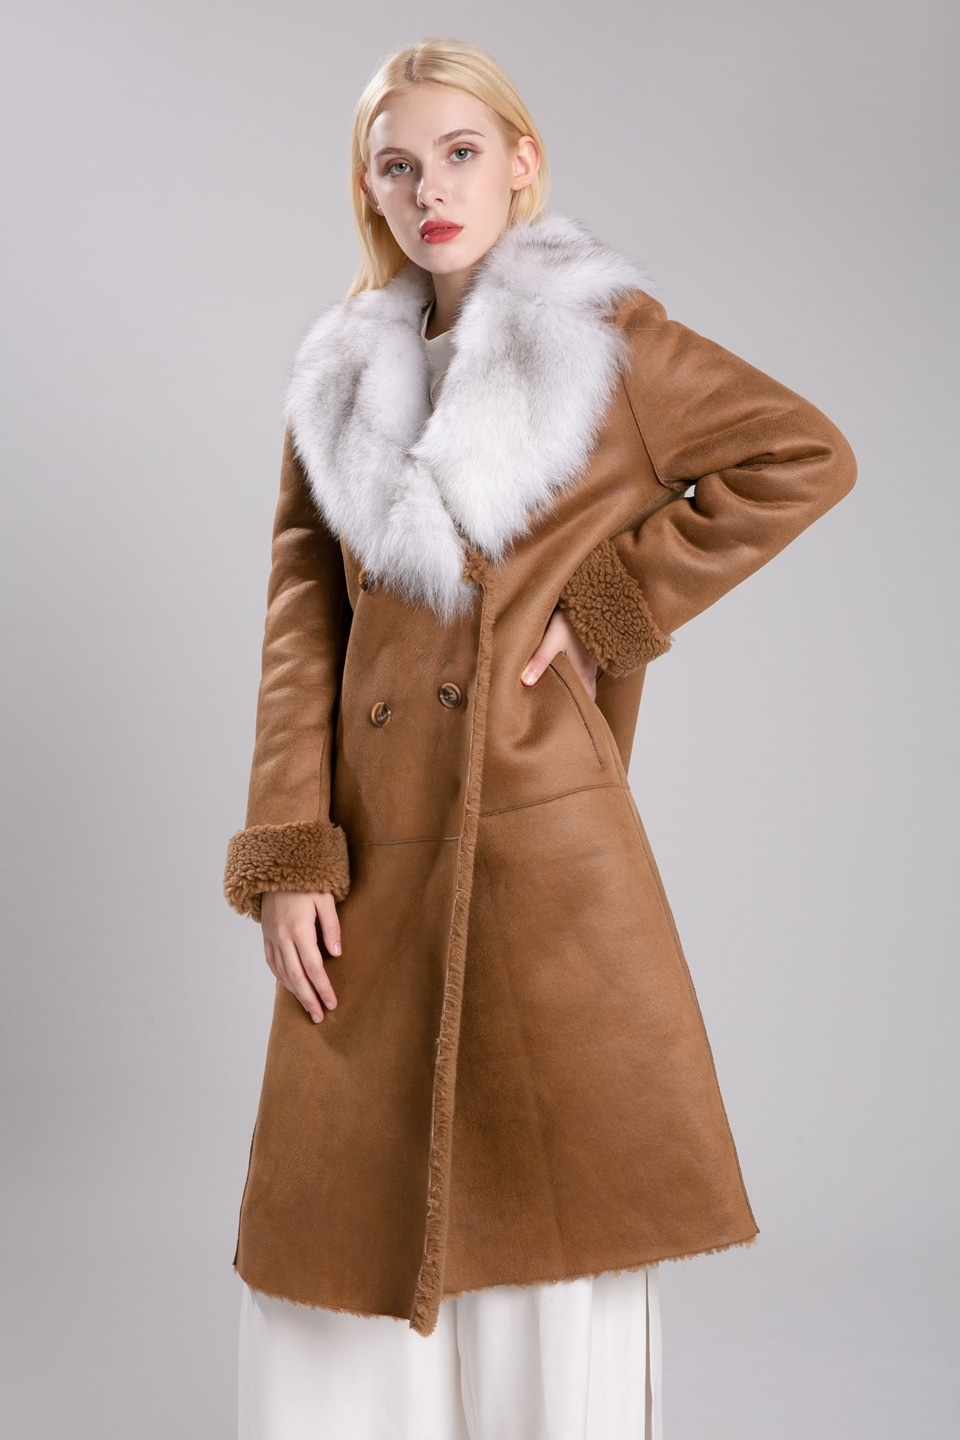 2019 fox fur fake mustang coat (camel)